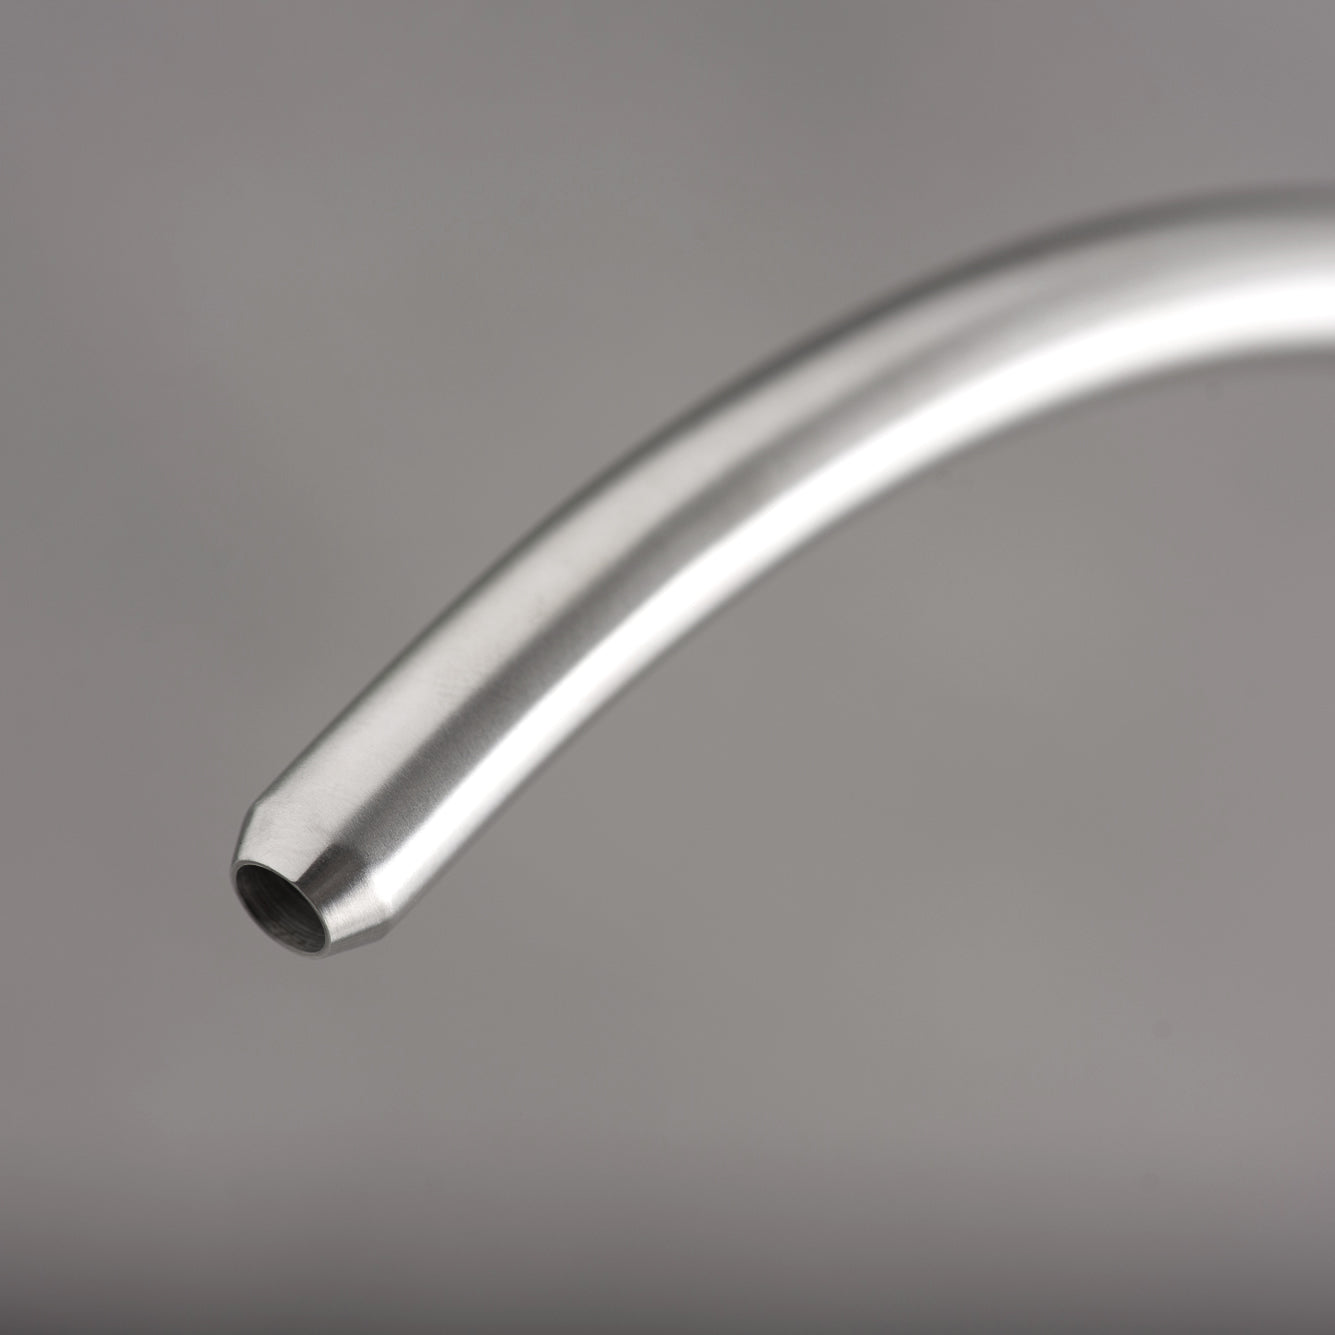 Grifo de agua potable DAX, cuerpo de acero inoxidable, acabado cepillado, tamaño 8-1/2 x 12-1/4 pulgadas (DAX-PJ-01) 